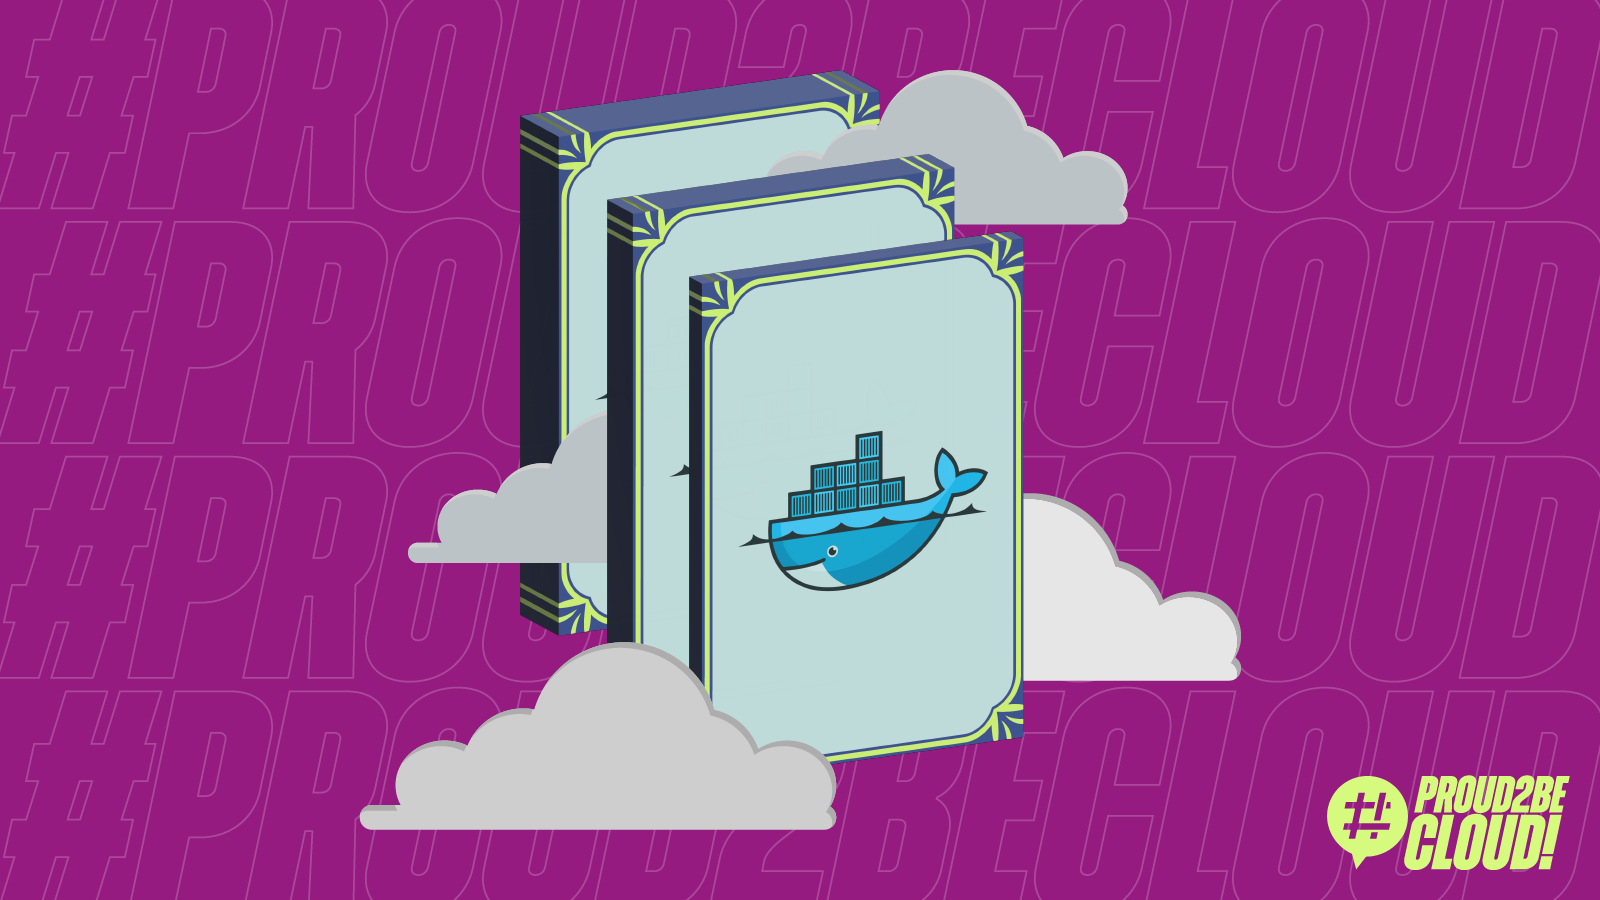 Deep dive in Docker: trucchi e suggerimenti per costruire immagini Docker ottimizzate per sicurezza e dimensioni.